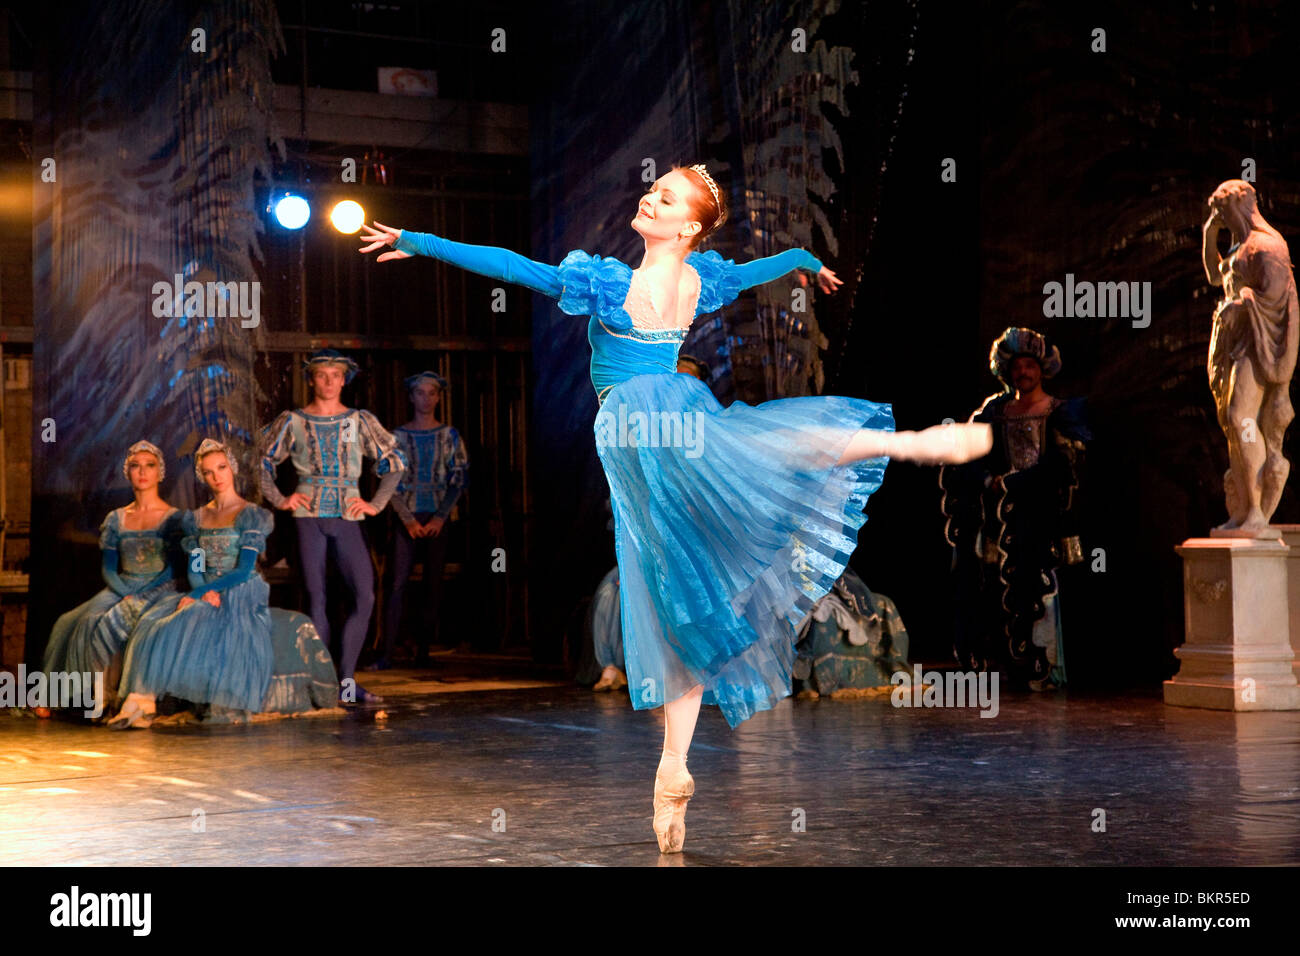 Russia, San Pietroburgo; una ballerina facendo un piroettare in suo pezzo solista durante Tchaikovsky "wan" sul lago Foto Stock